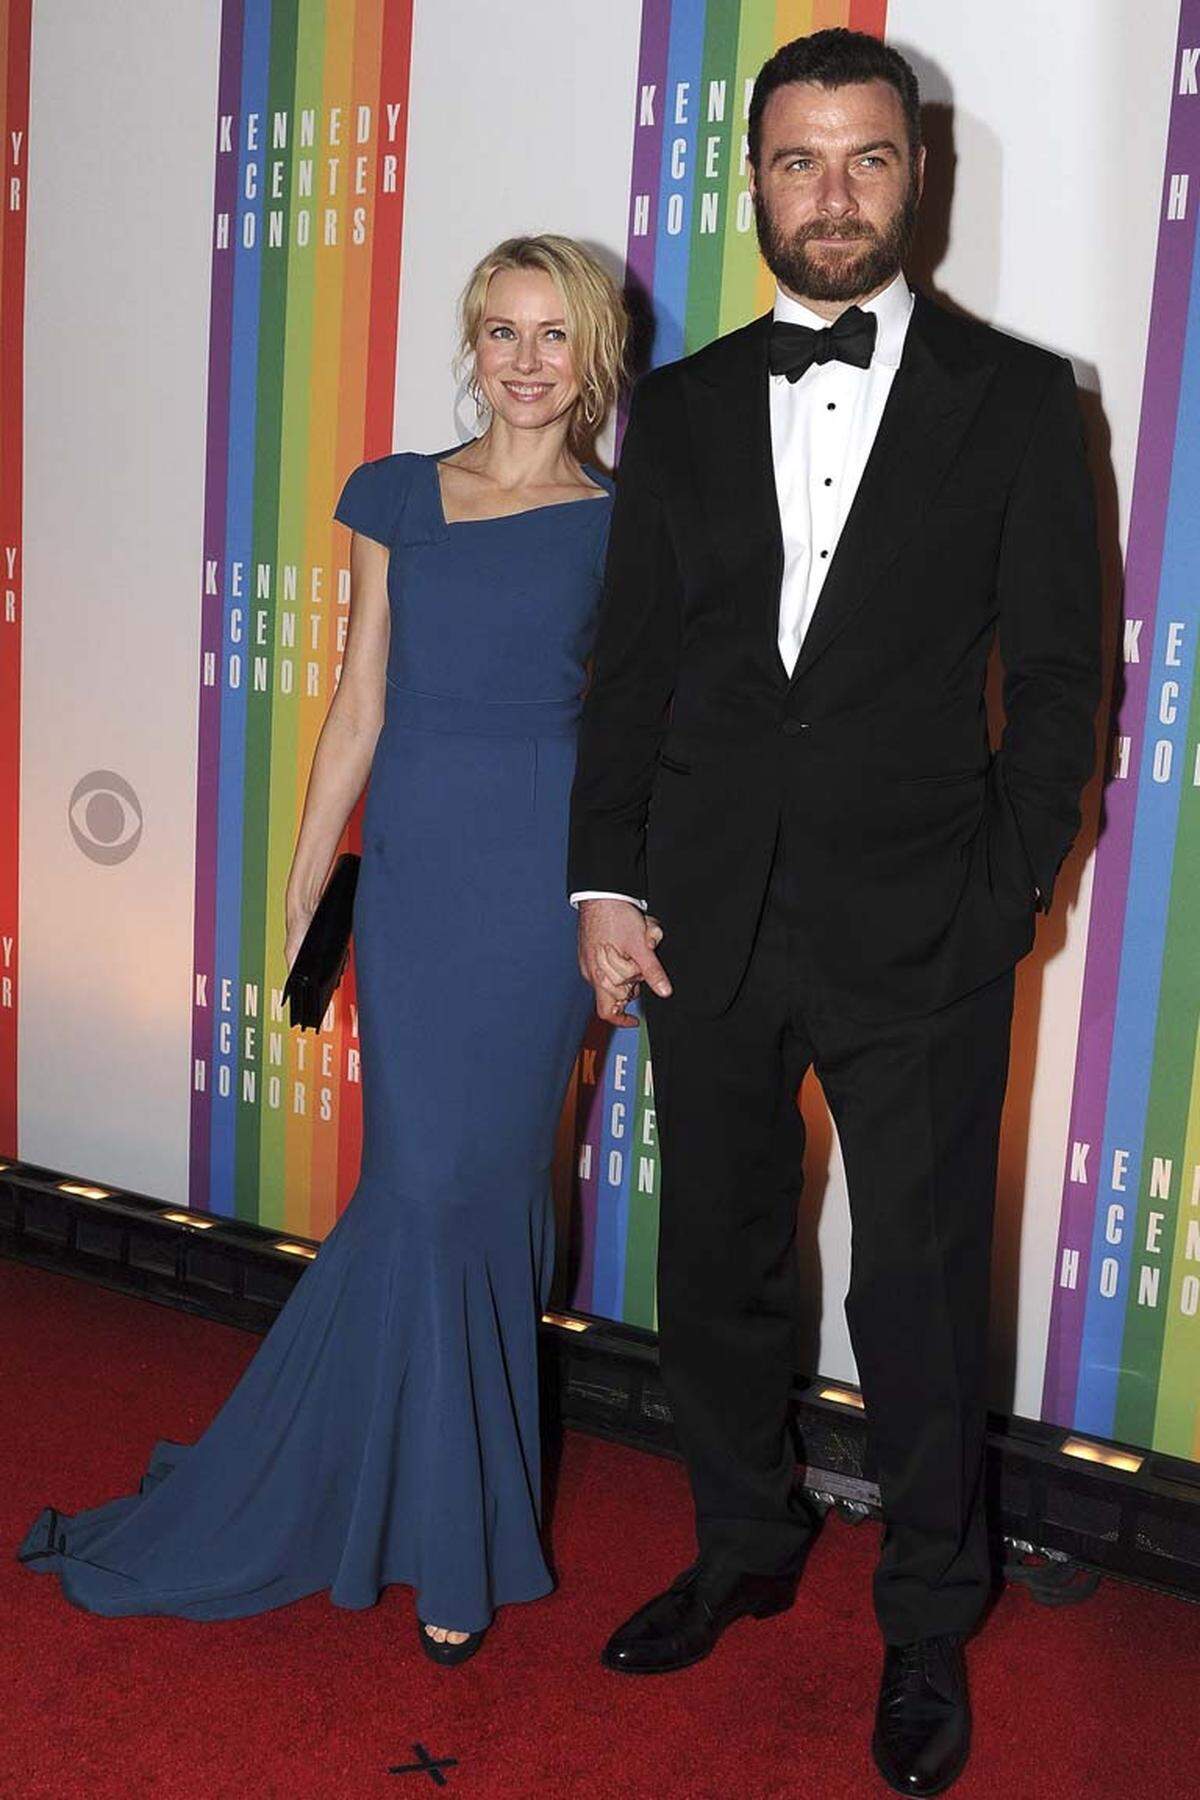 Noch ein Blick auf die Gästeliste: Die Schauspielerin Naomi Watts kam mit ihrem Partner Liev Schreiber.